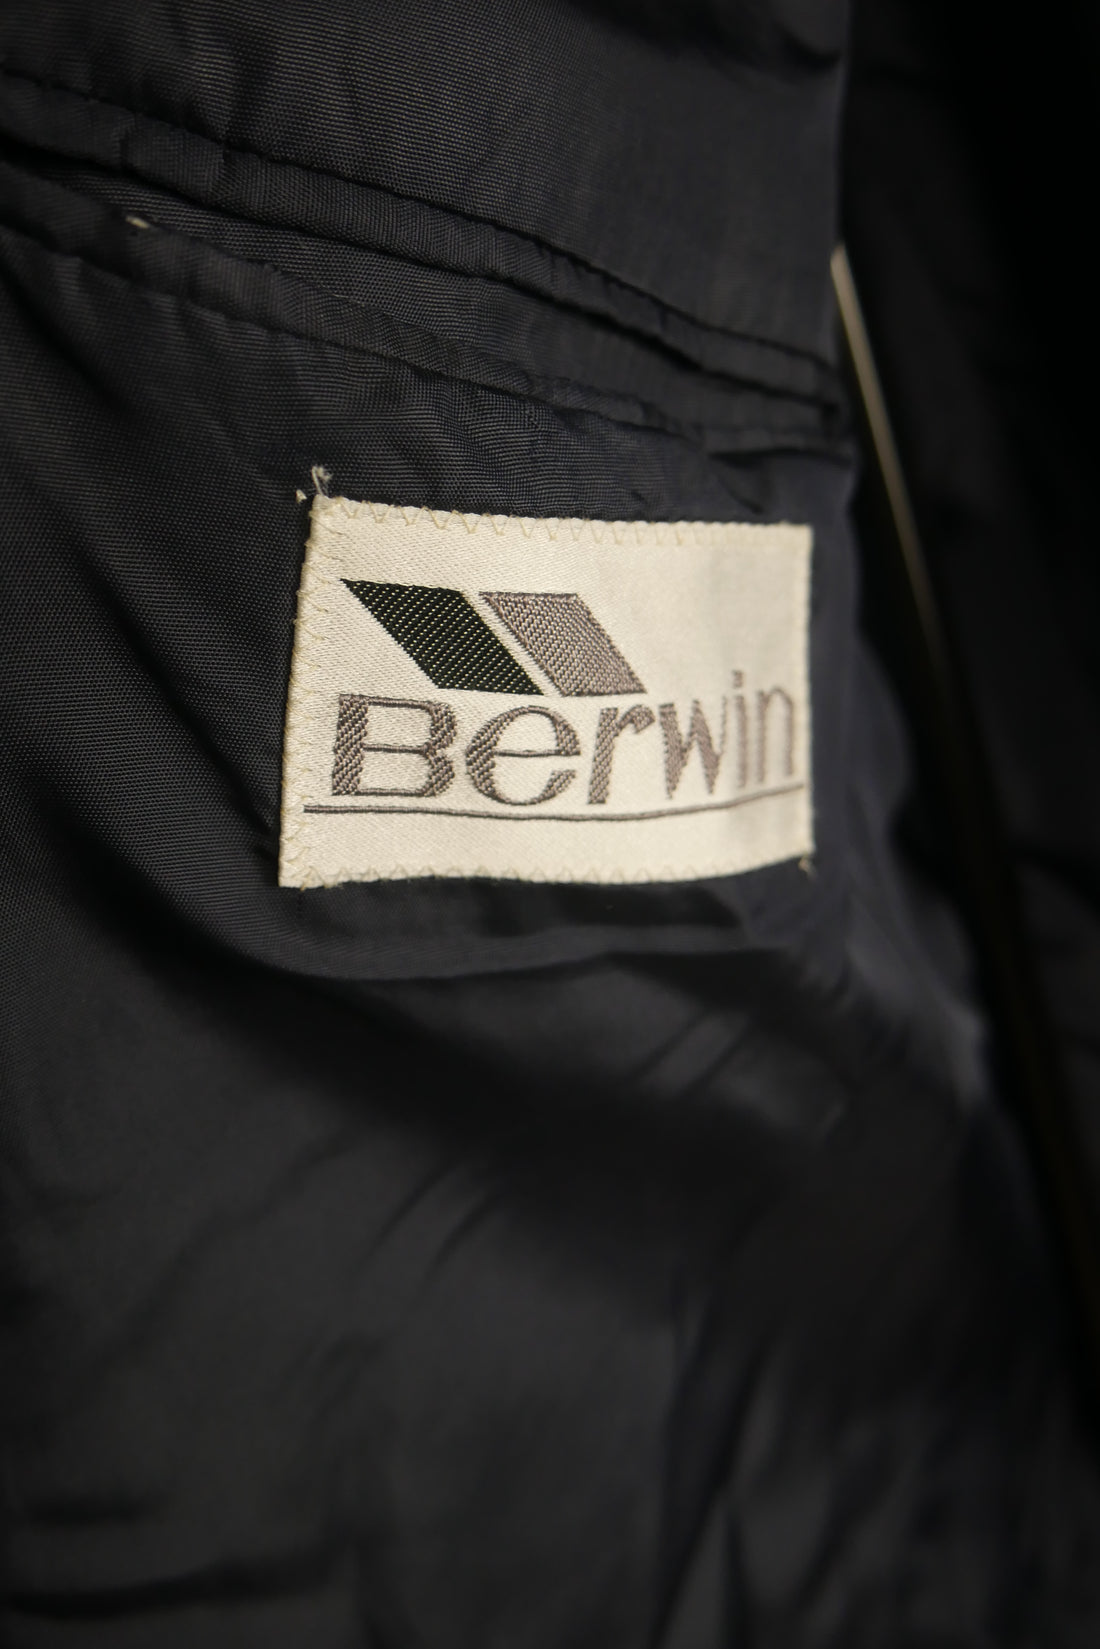 The Classic Vintage Berwin Suit Jacket (44R)